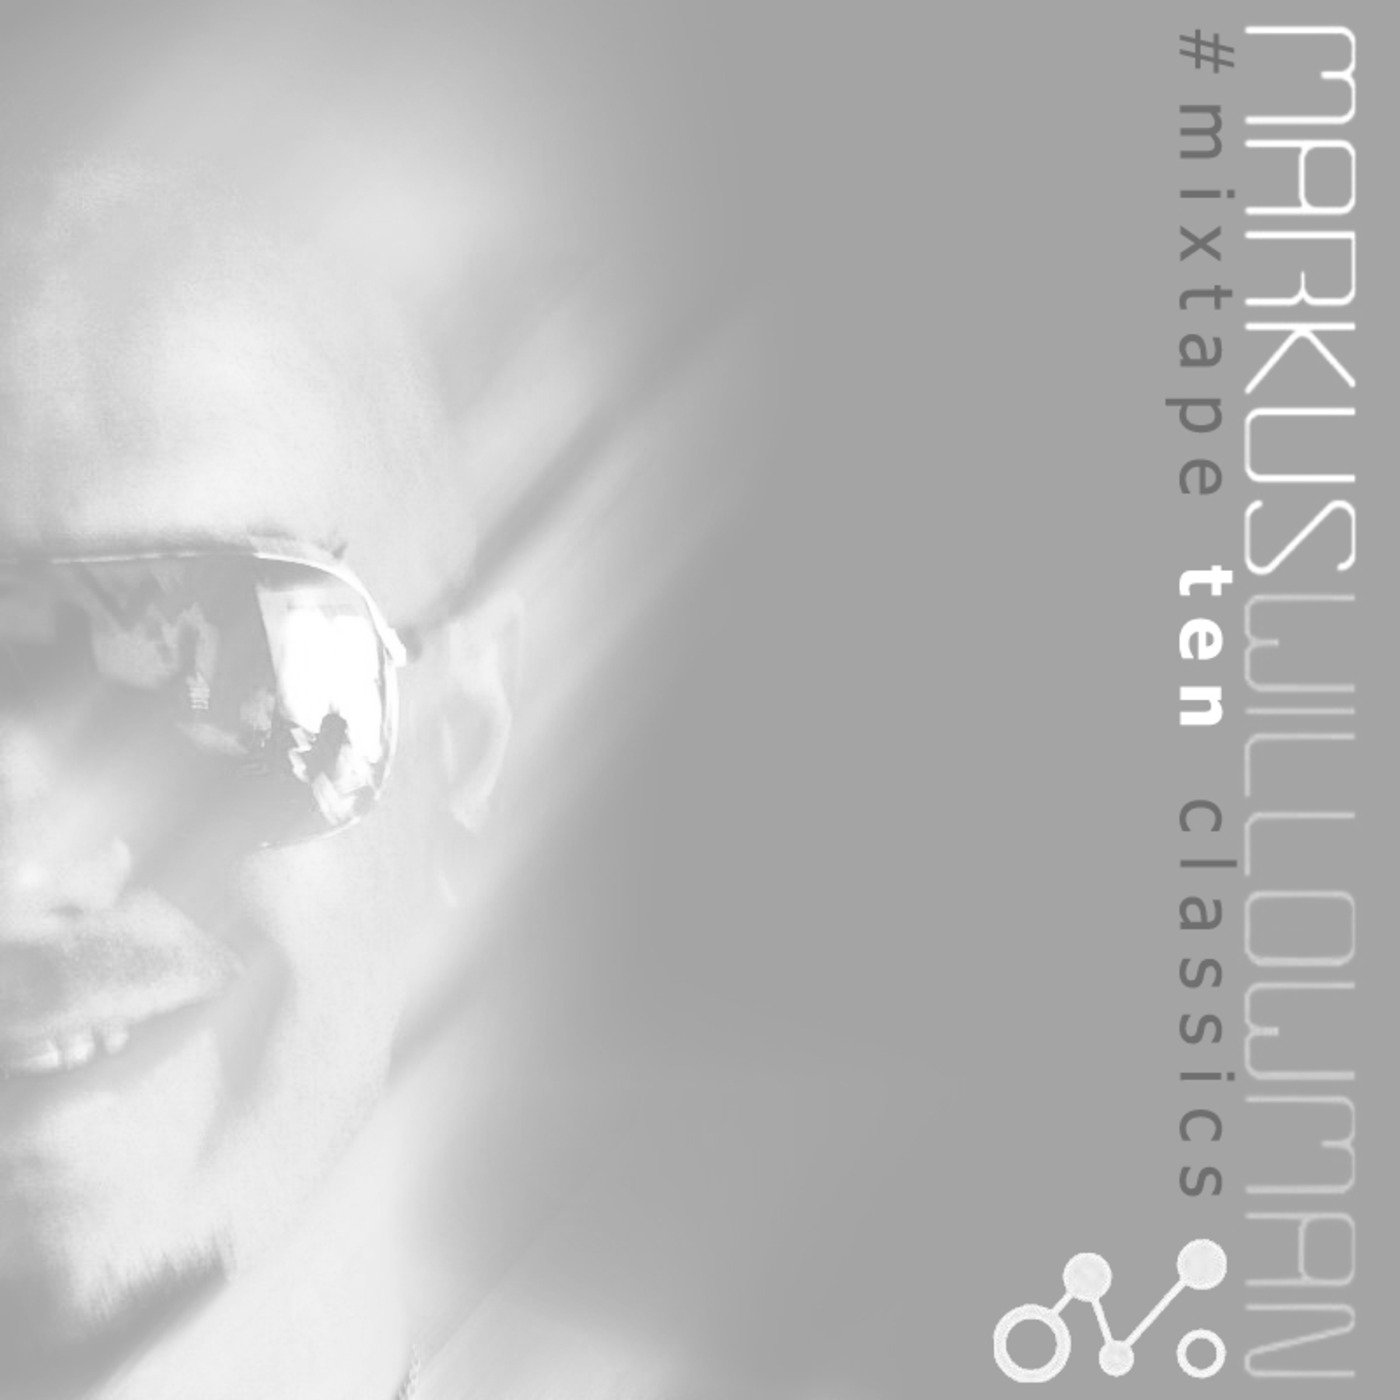 Mixtape10 by Markus Willowman (Classics)